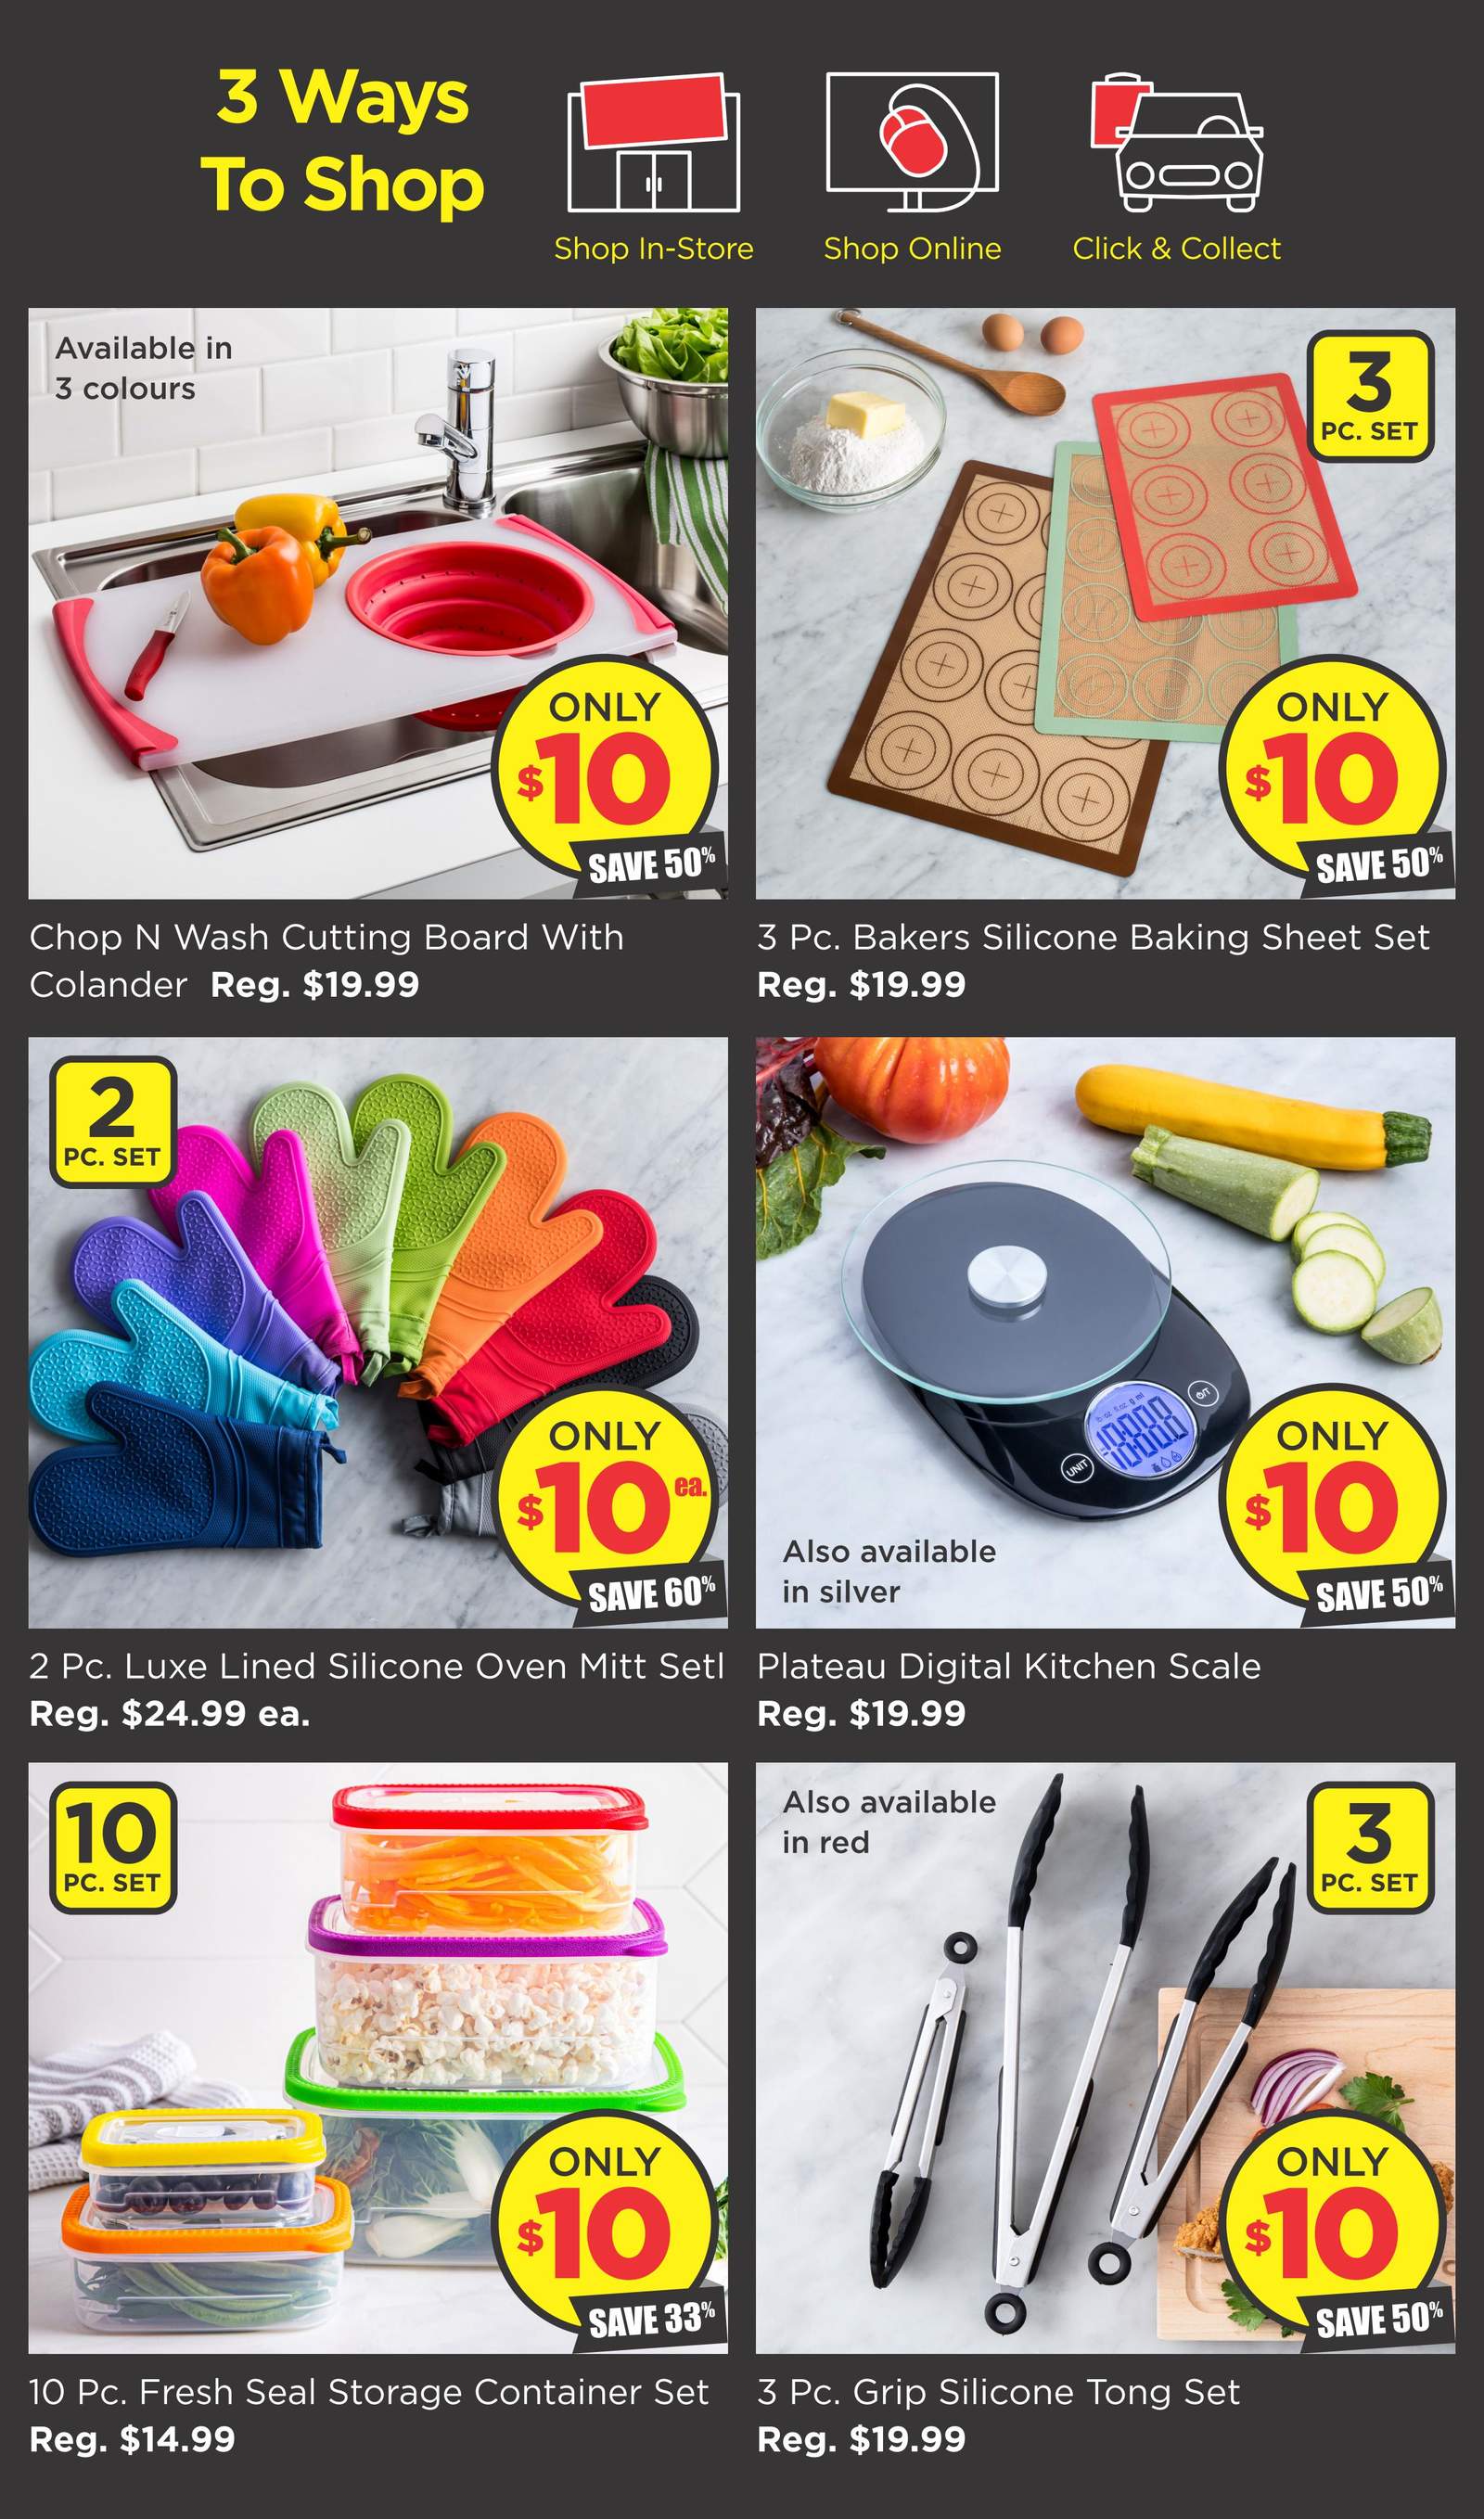 https://flyers.smartcanucks.ca/uploads/pages/231448/kitchen-stuff-plus-red-hot-deals-flyer-november-27-to-december-3-5.jpg